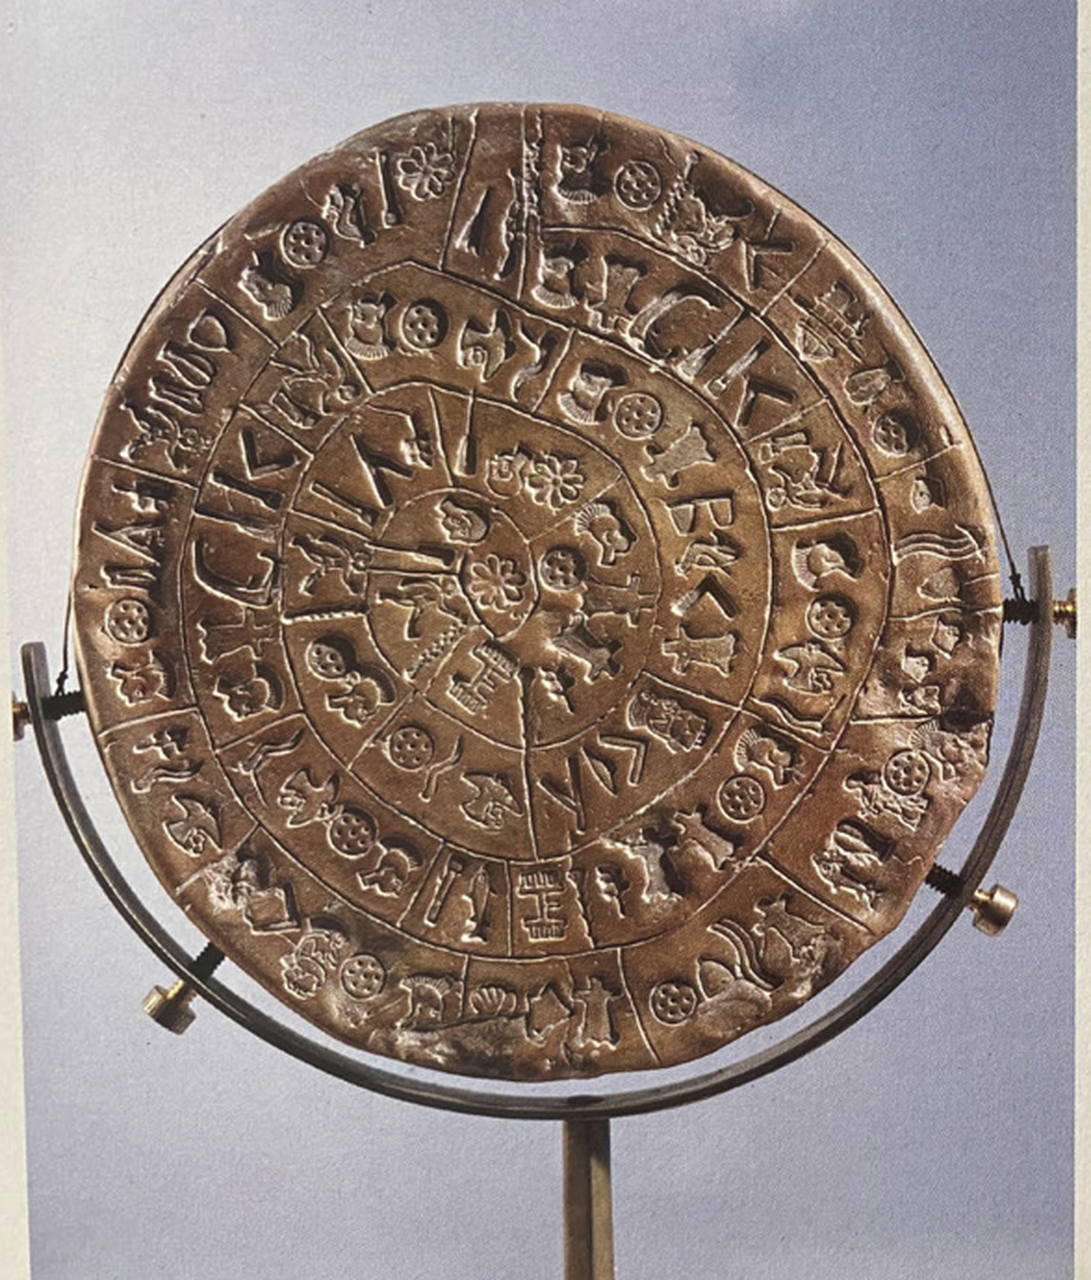 费斯托斯圆盘的两面考古学和密码学中最著名的谜团之一